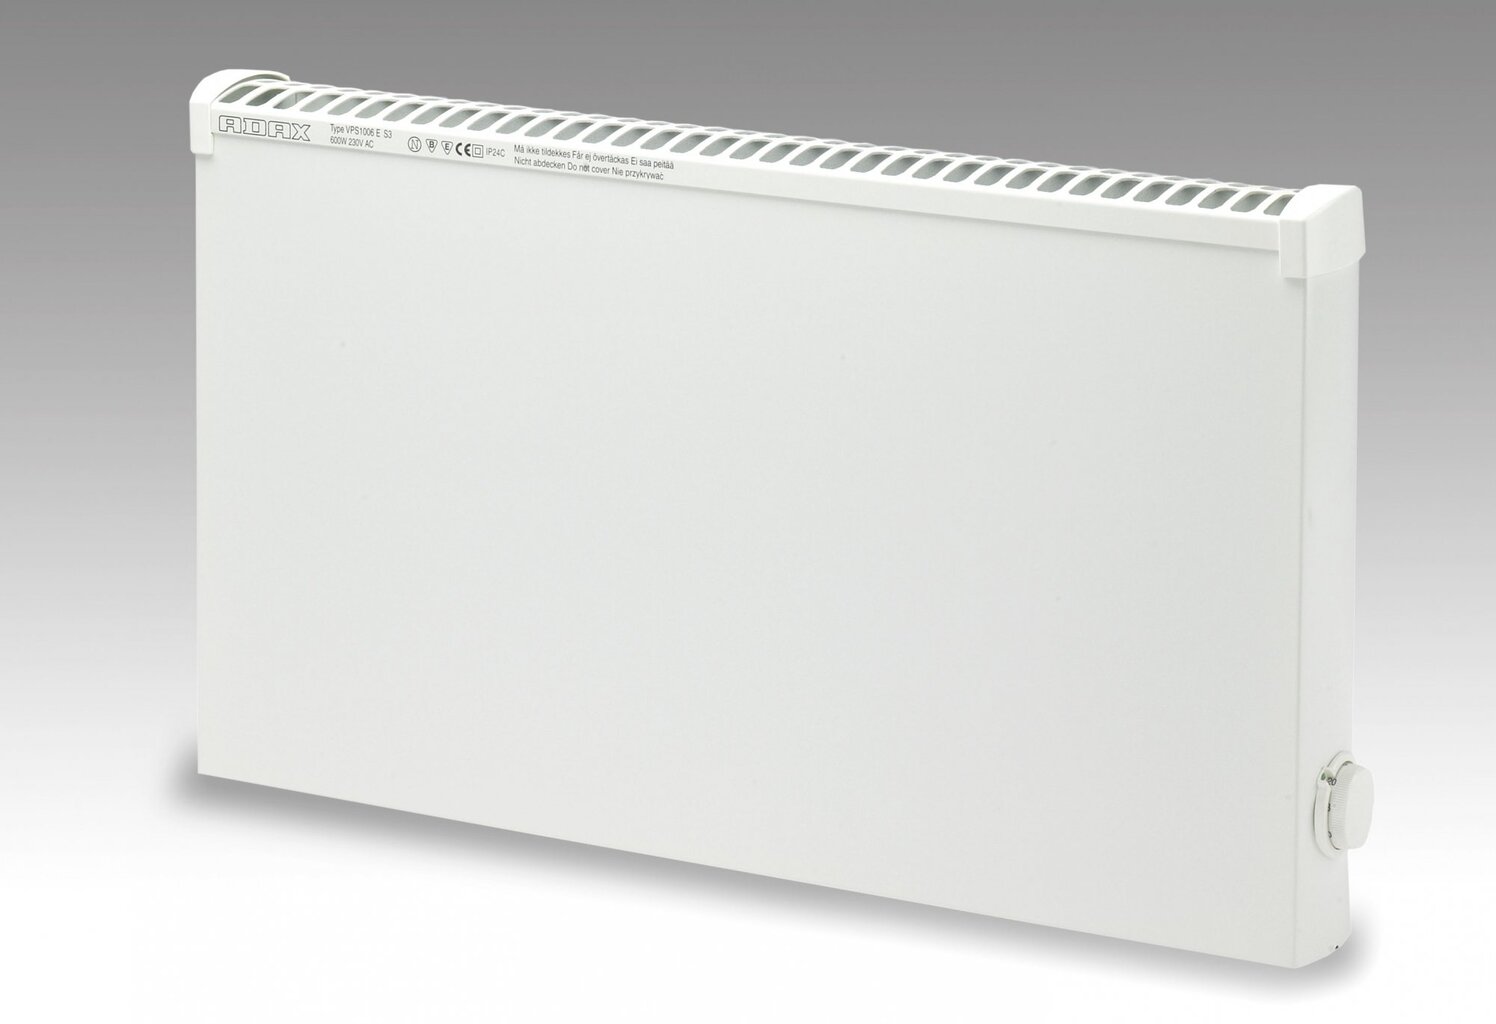 Atsparus aptaškymui elektrinis radiatorius VPS1006KEM 600W kaina ir informacija | Šildytuvai | pigu.lt